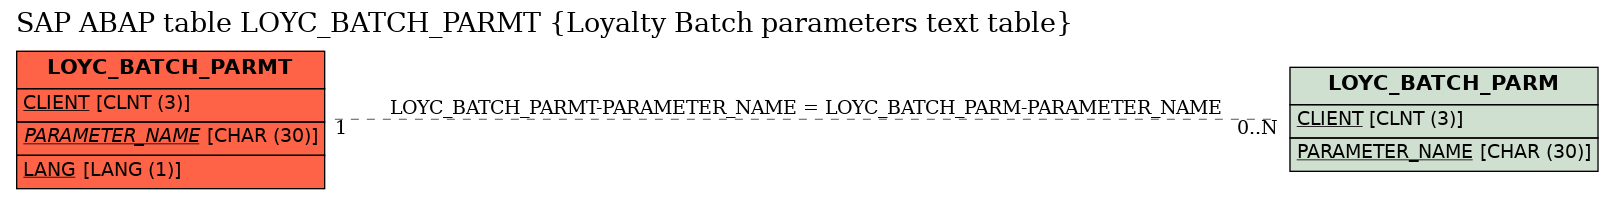 E-R Diagram for table LOYC_BATCH_PARMT (Loyalty Batch parameters text table)